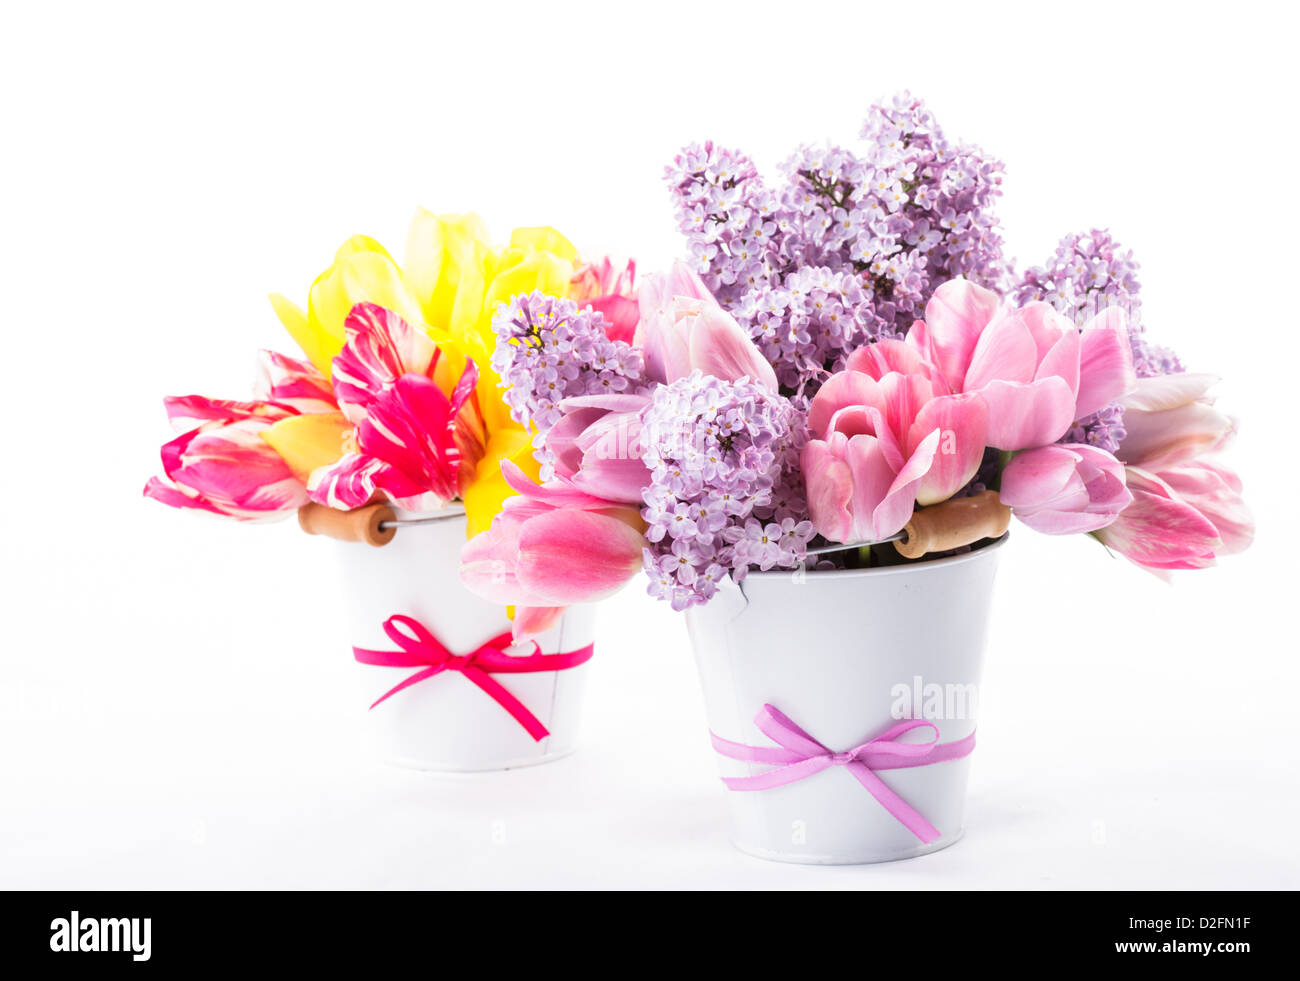 Bouquets de tulipes et lilas sur fond blanc Banque D'Images